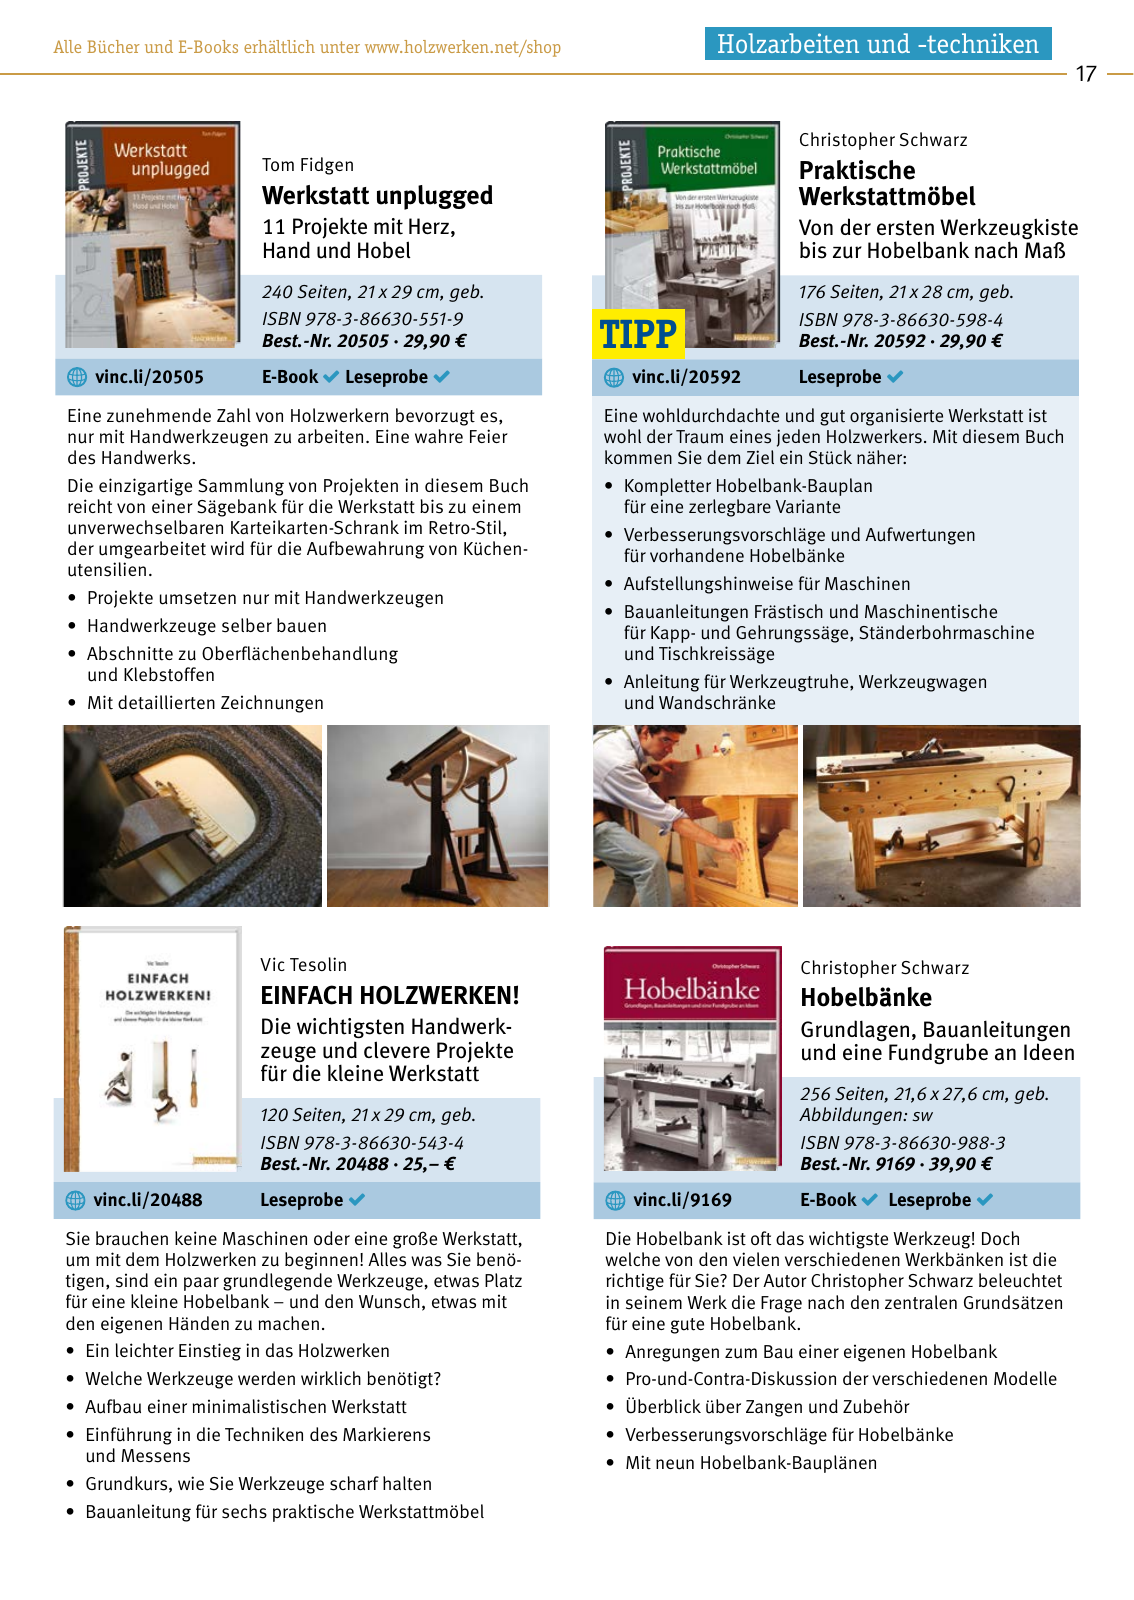 Vorschau HolzWerken Katalog 2020 Seite 17